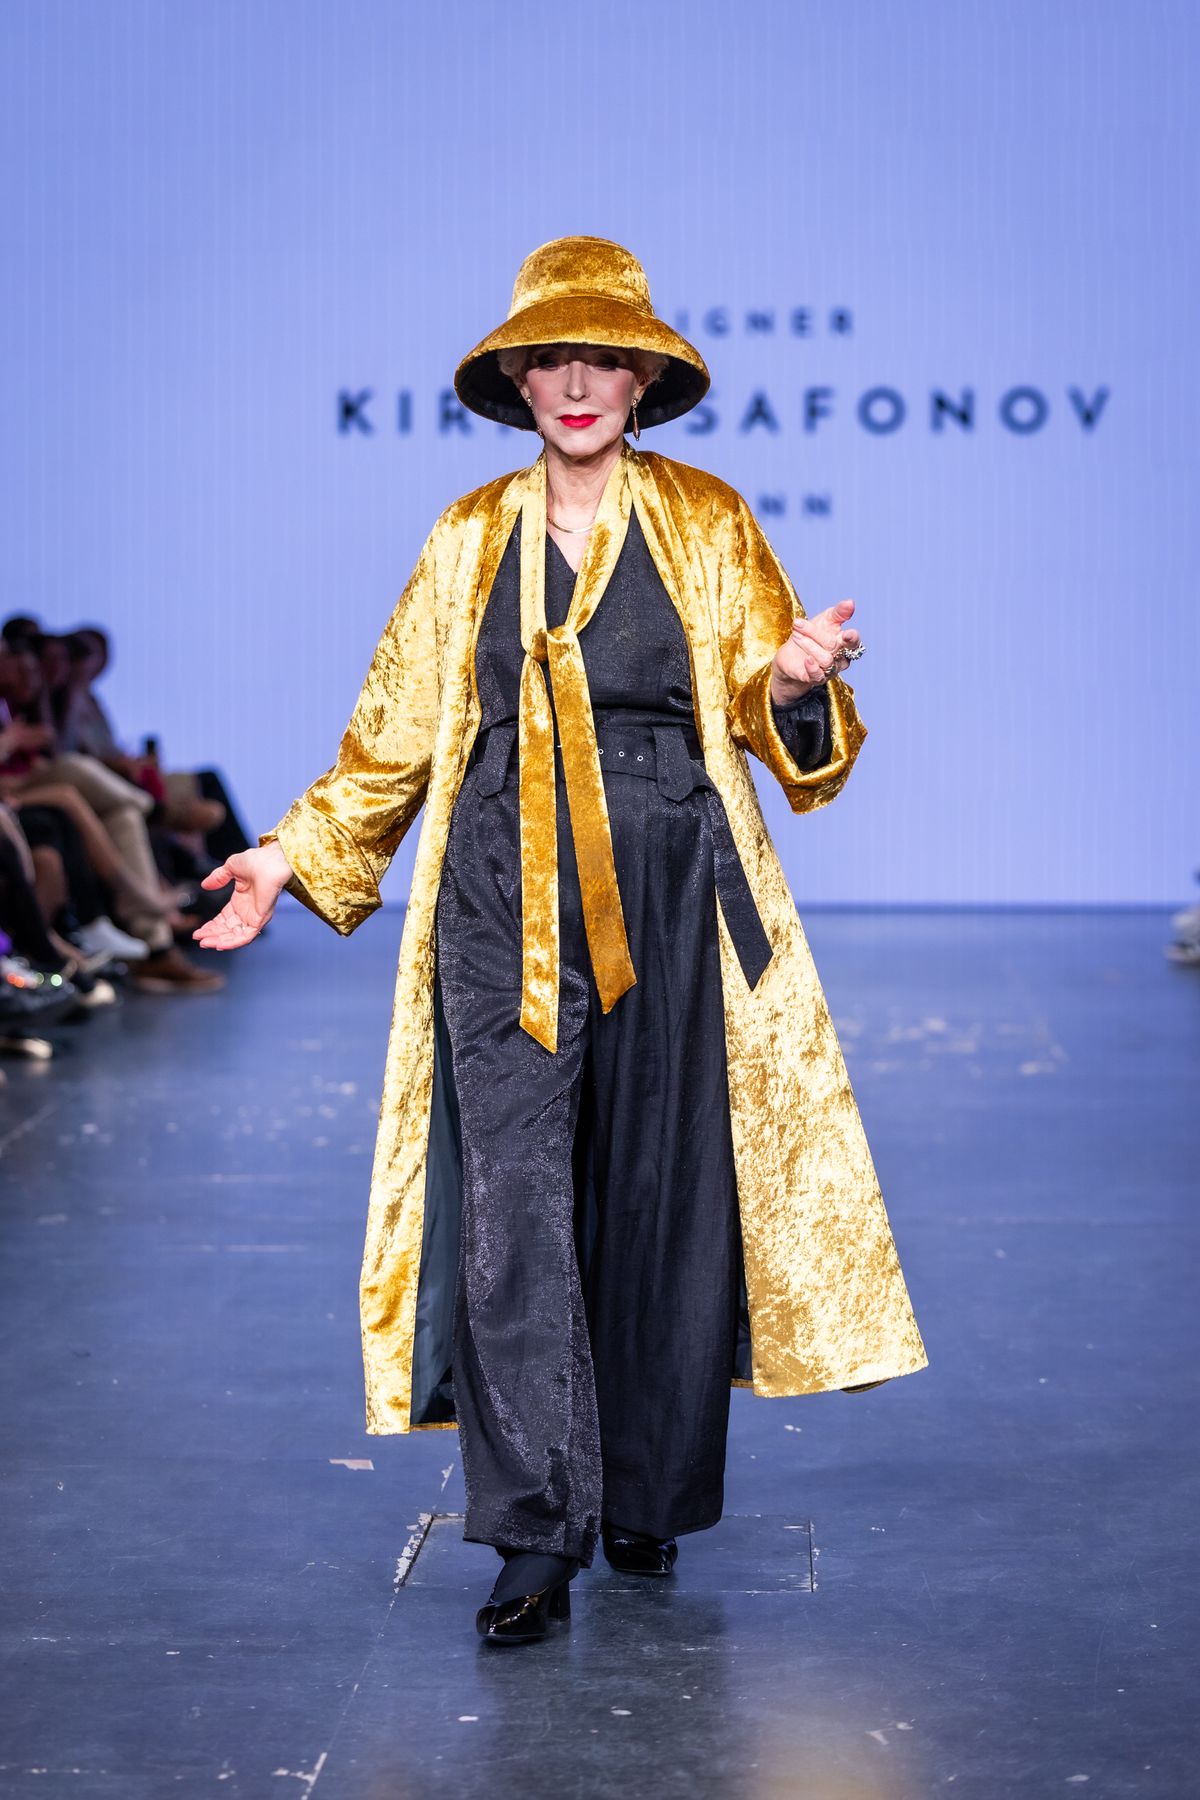 Kirill Safonov disainib iga rõiva kandja järgi nii, et see tunneb end kuningannana, laval võrratu Liina Orlova.